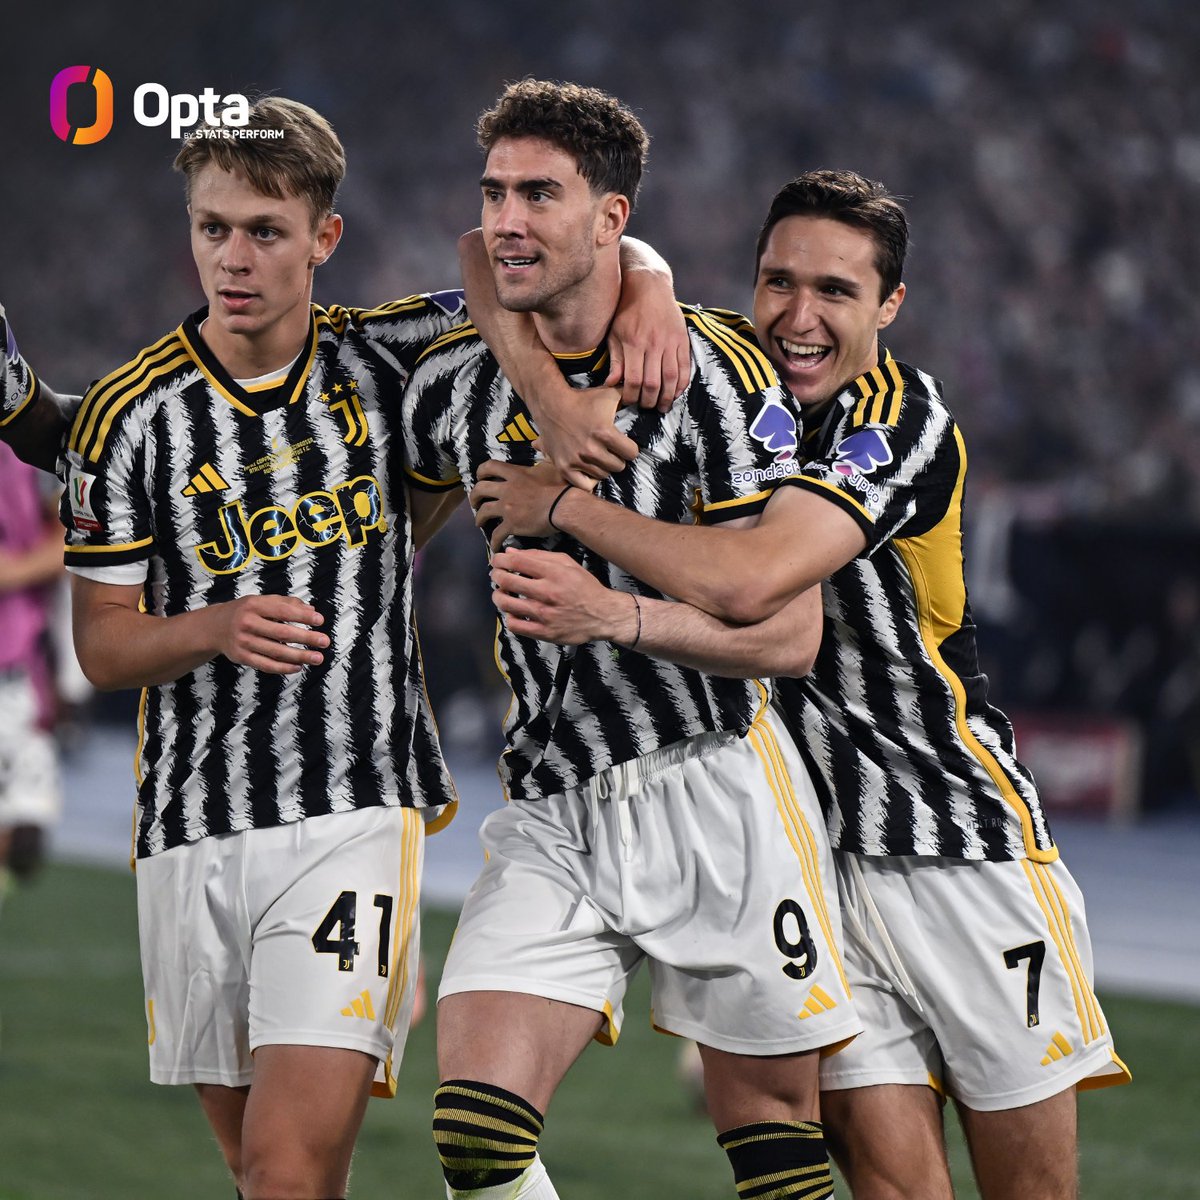 15 - La Juventus – squadra che ha sollevato più volte il trofeo, con 15 successi – ha vinto sei delle ultime otto finali di Coppa Italia disputate, tra cui le ultime due contro l’Atalanta (2021 e 2024). Supremazia. #AtalantaJuve #CoppaItalia